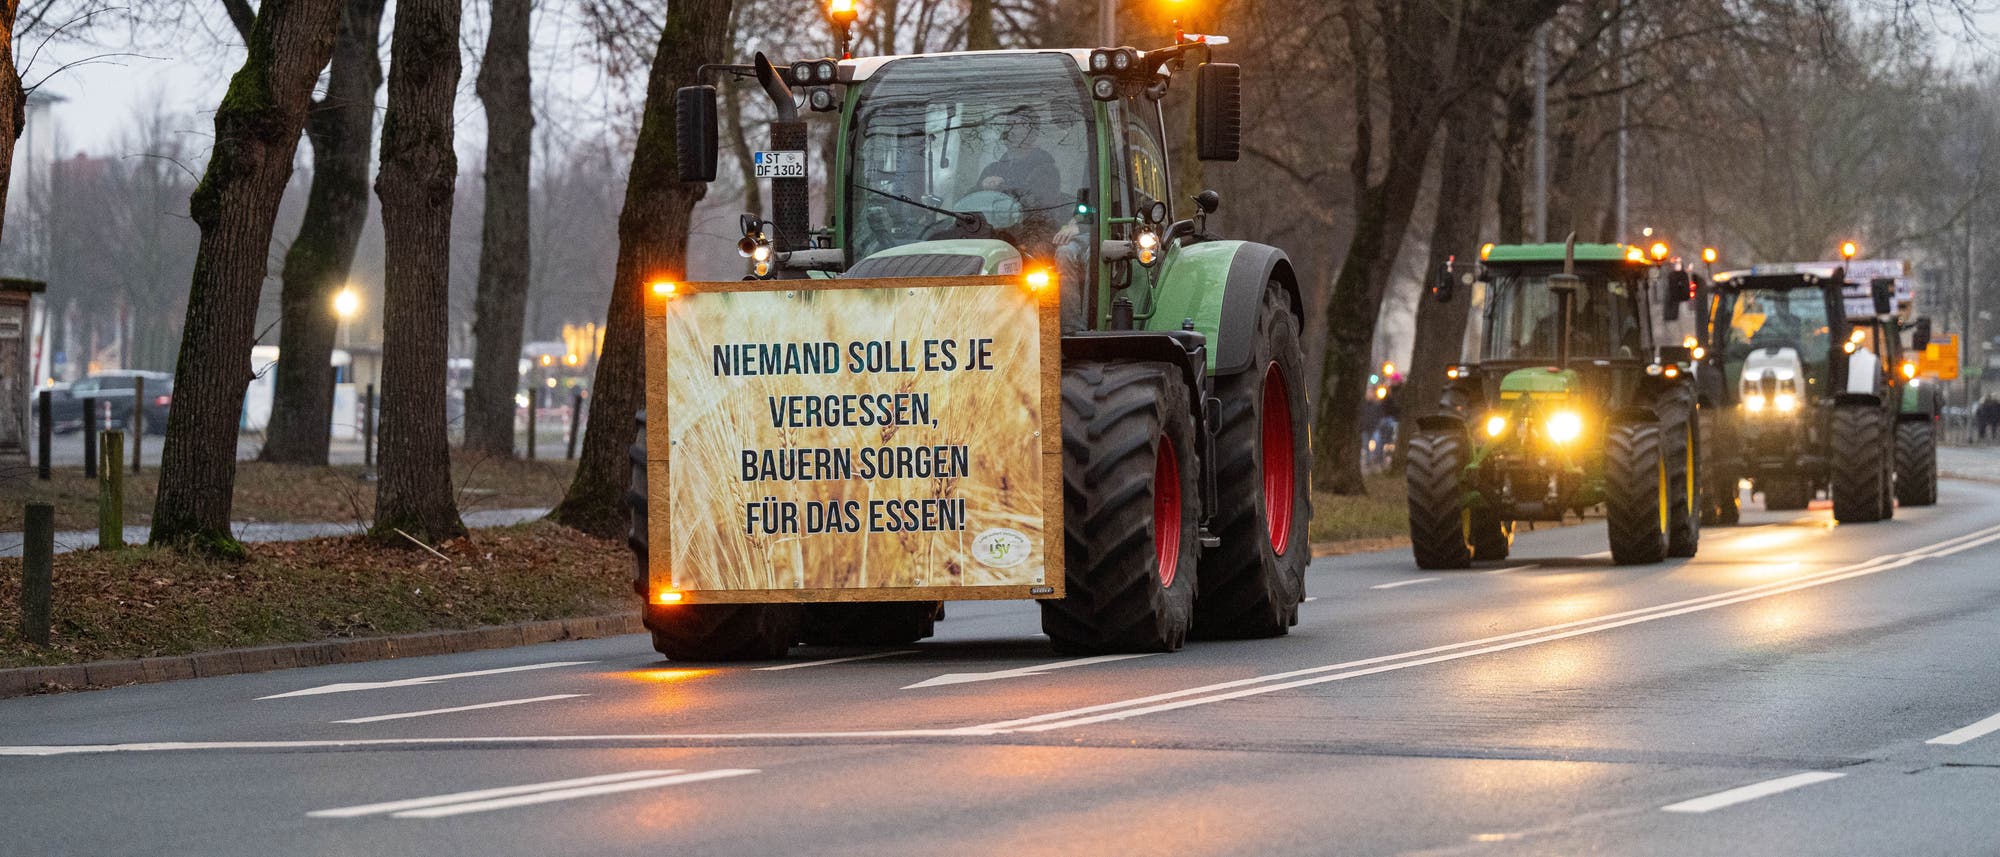 Mehrere Traktoren fahren hintereinander auf der Straße. Der vorderste hat ein Schild an der Stoßstange, auf dem steht: Niemand soll es je vergessen, Bauern sorgen für das Essen.